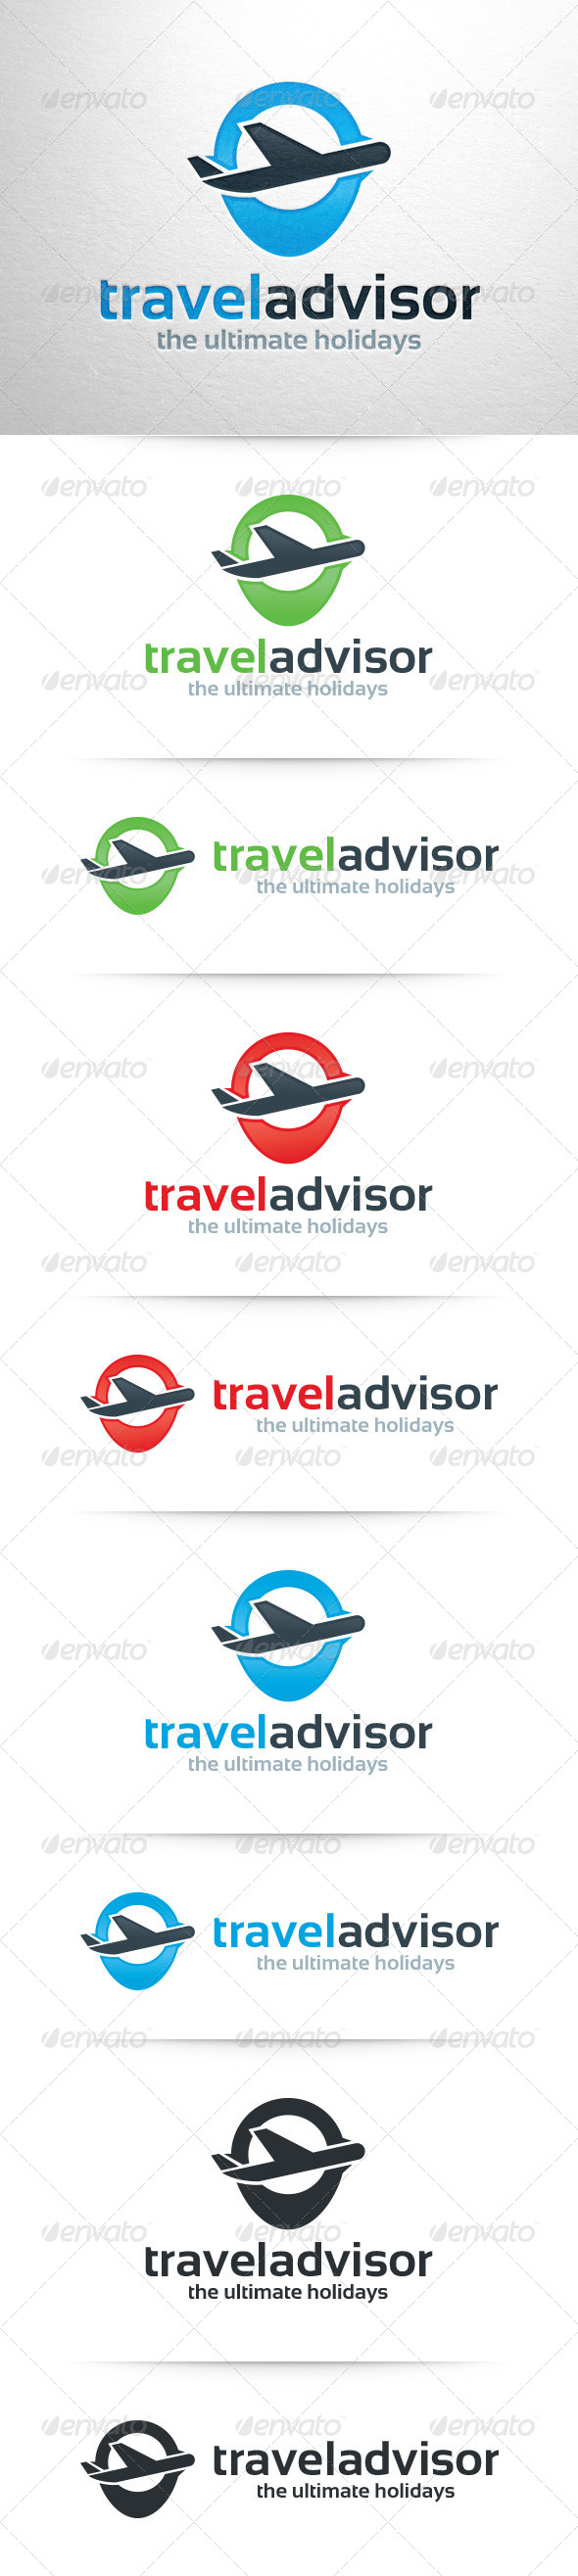 GraphicRiver Travel Advisor Logo Template 7692595